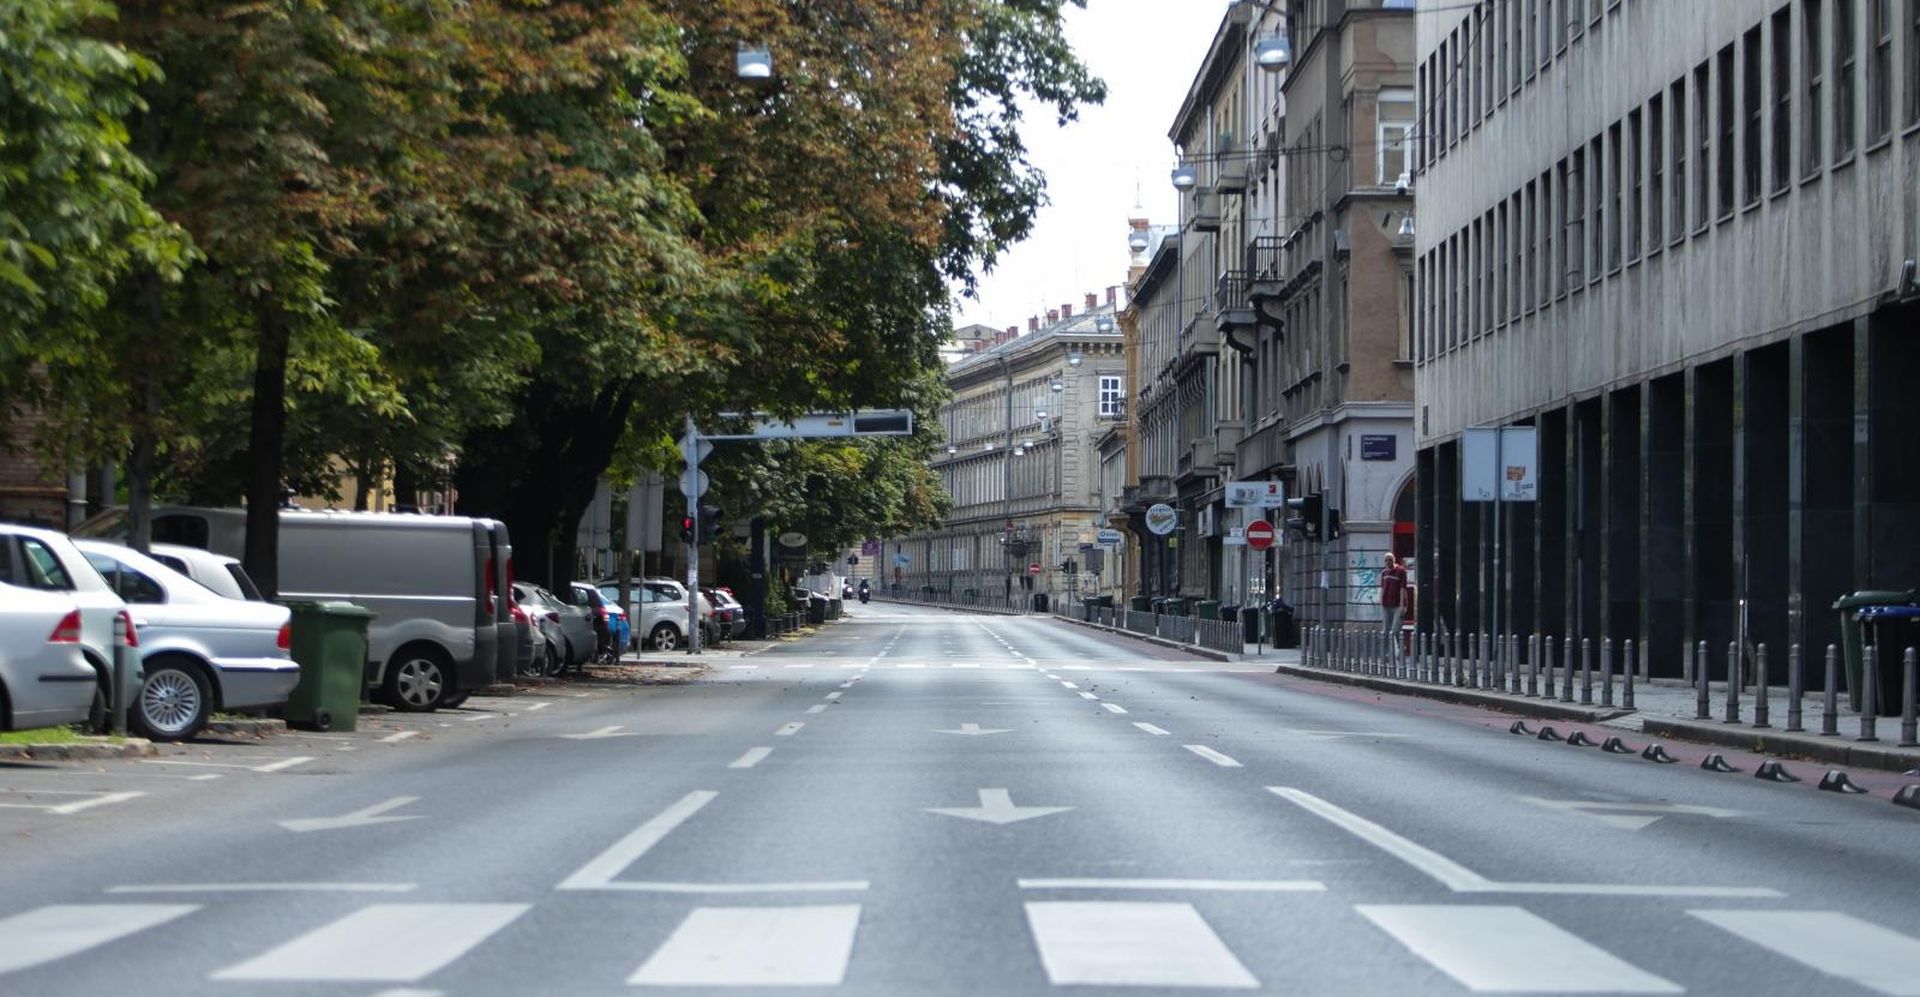 05.08.2019., Zagreb - Potpuno prazne ulice u centru grada.  Photo: Filip Kos/PIXSELL